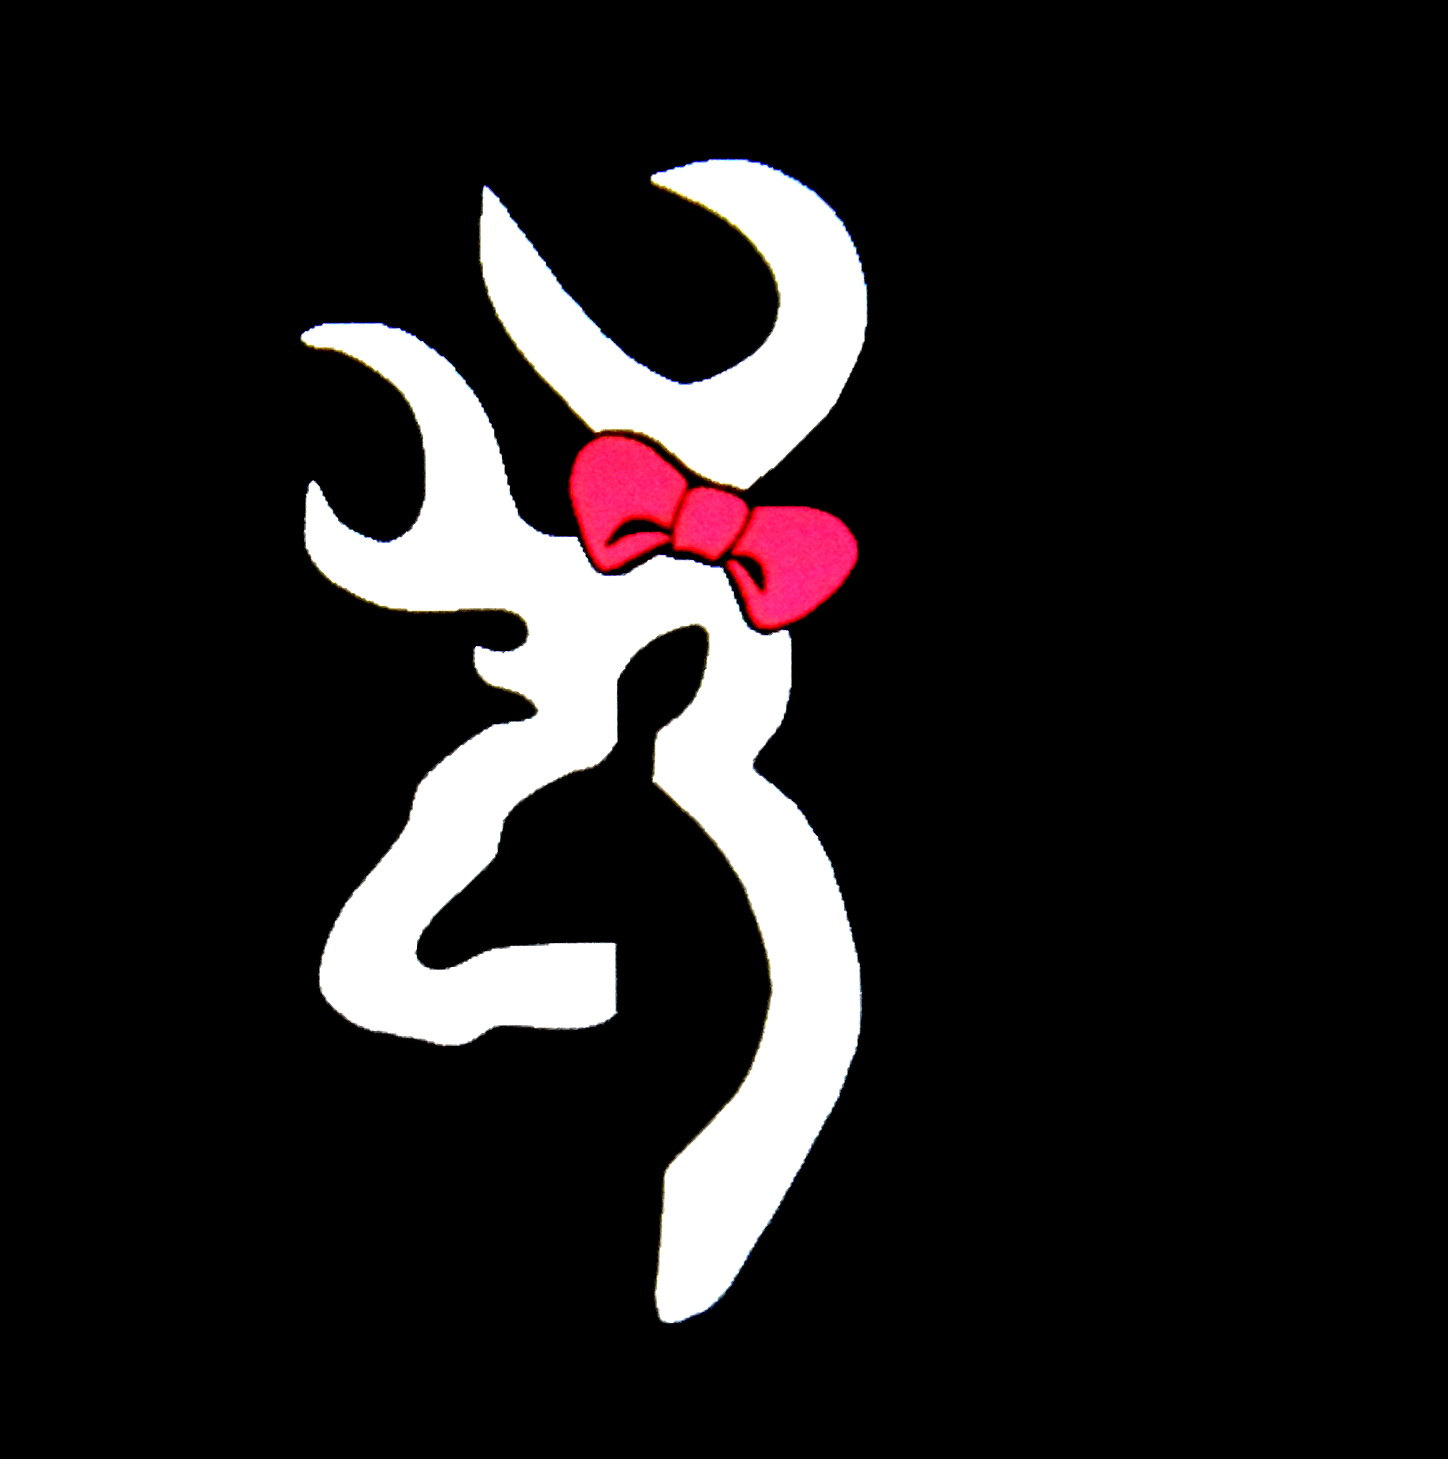 Displaying Image For Pink Browning Symbol